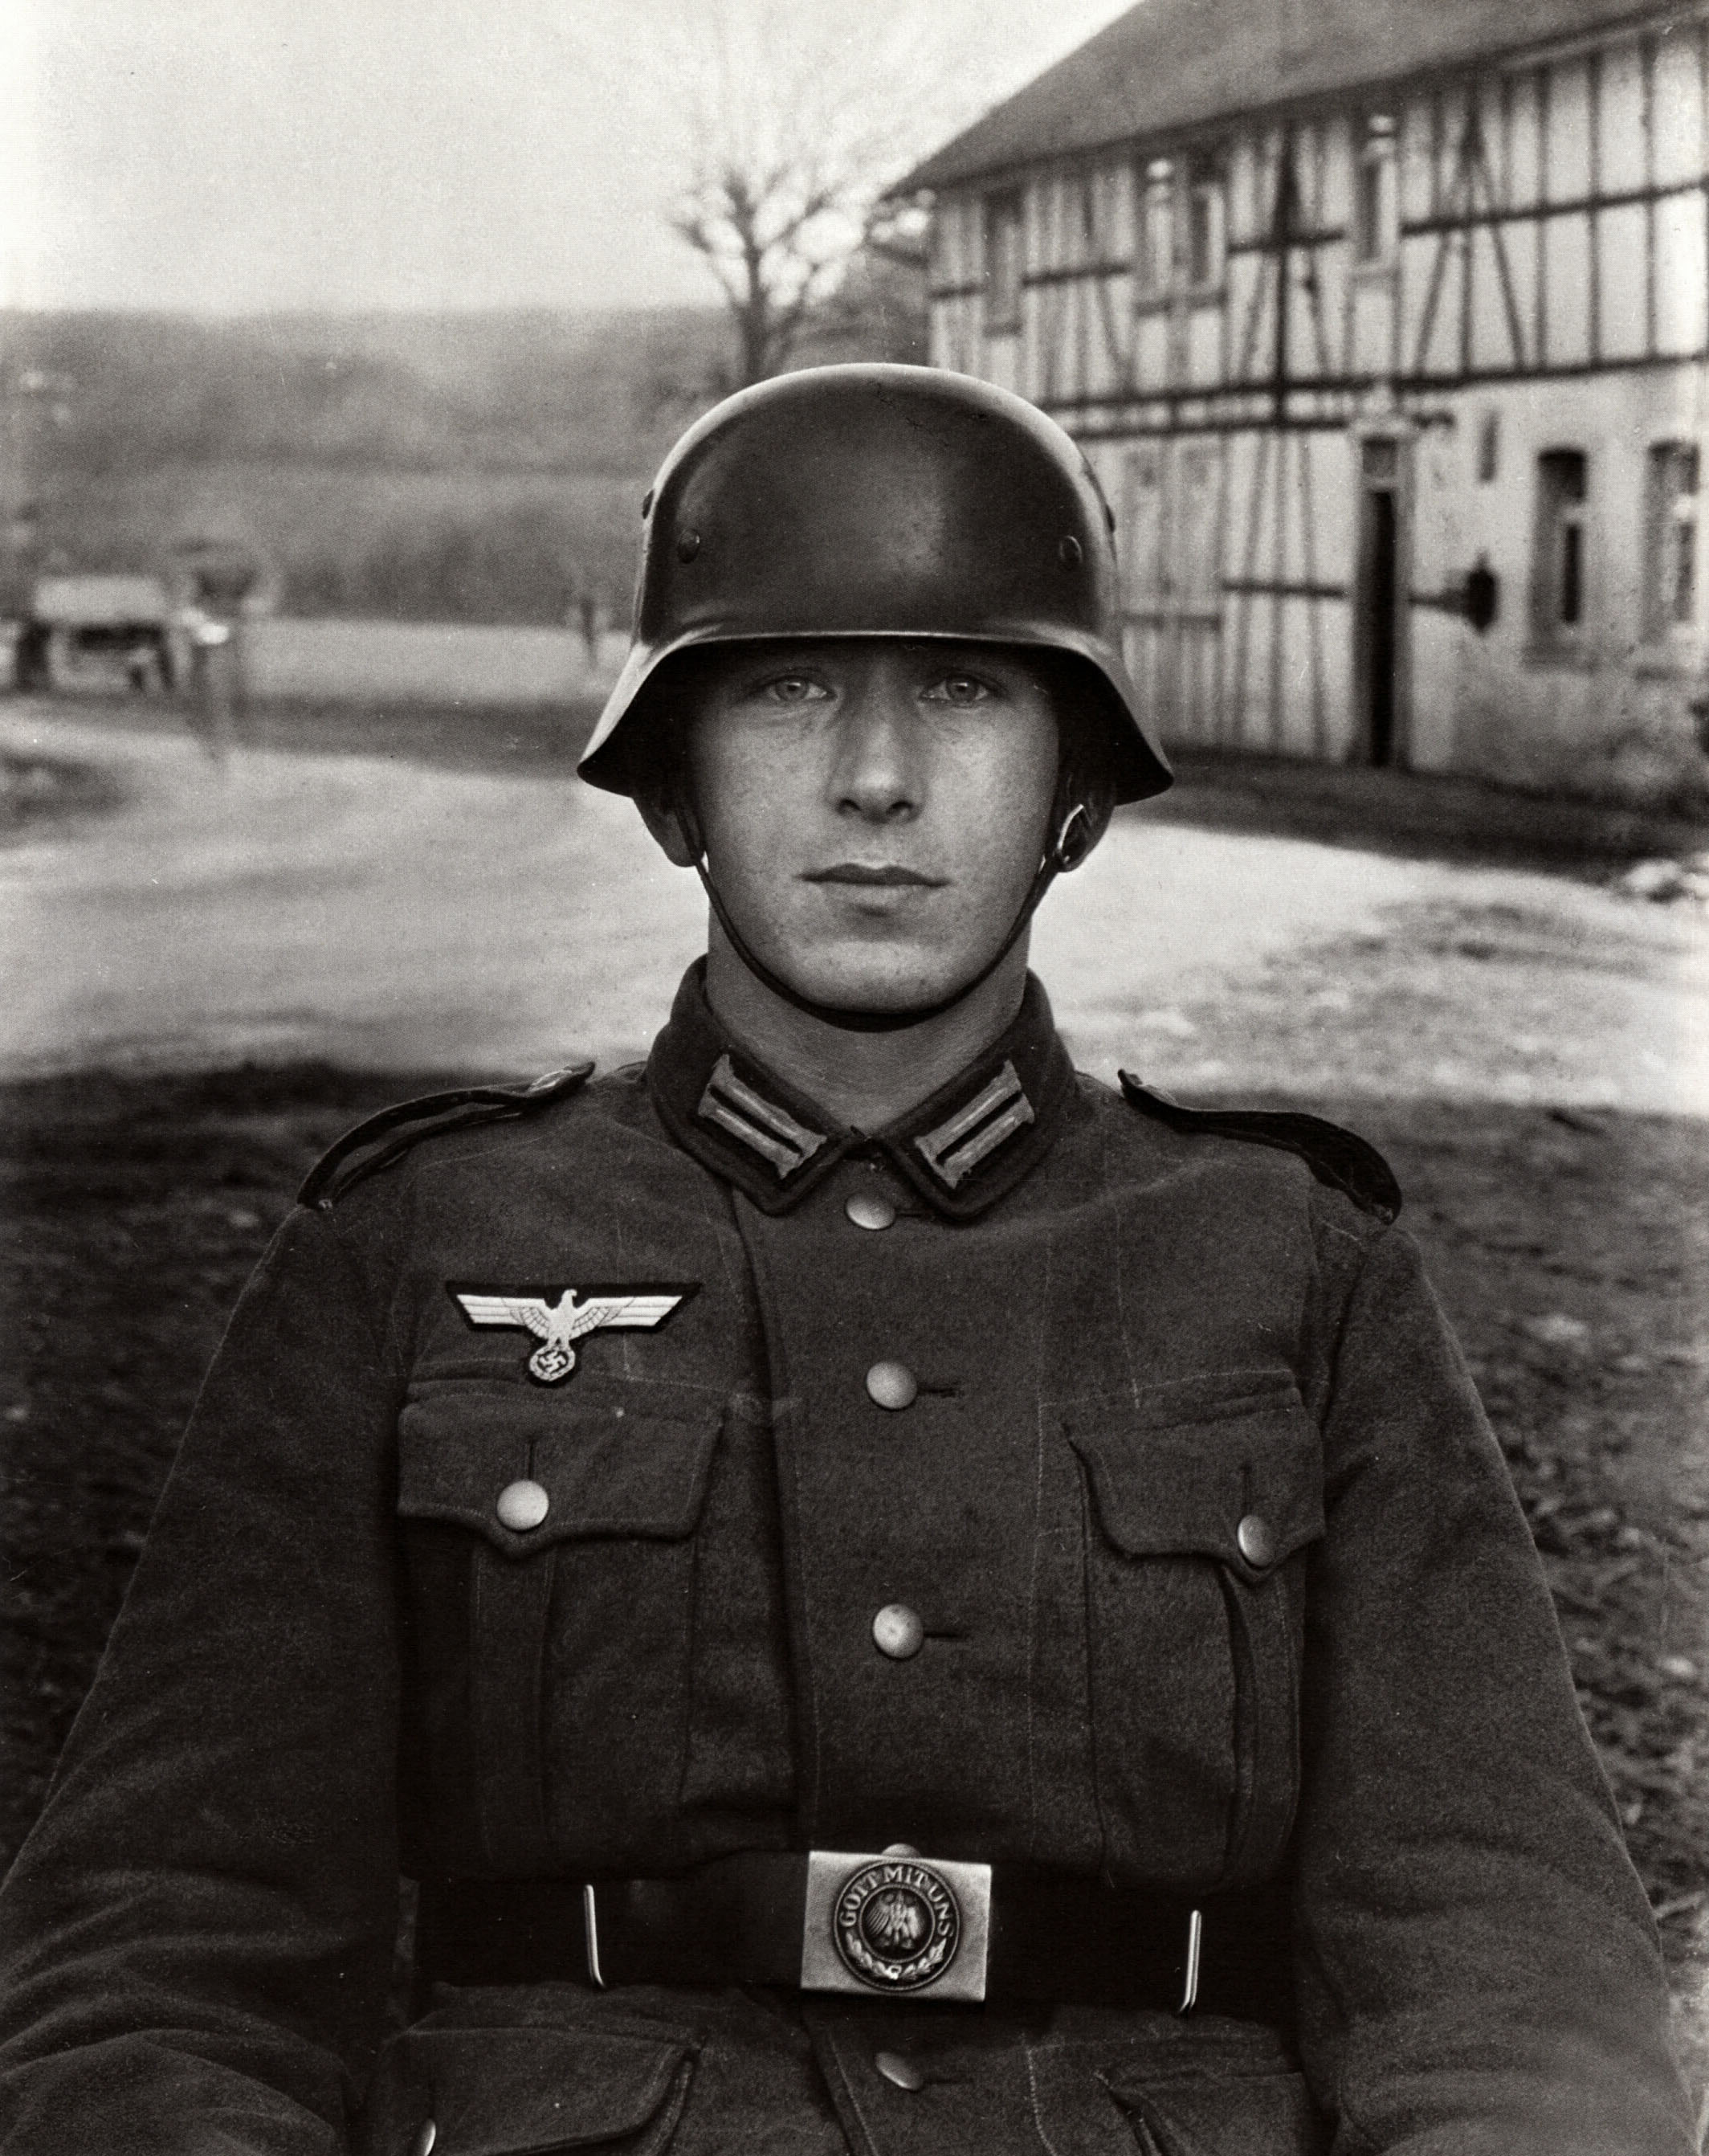 Сделать по немецкому по фото. Солдат Германии второй мировой СС. Солдат СС И солдат вермахта. Немецкий солдат вермахта. СС 1940.